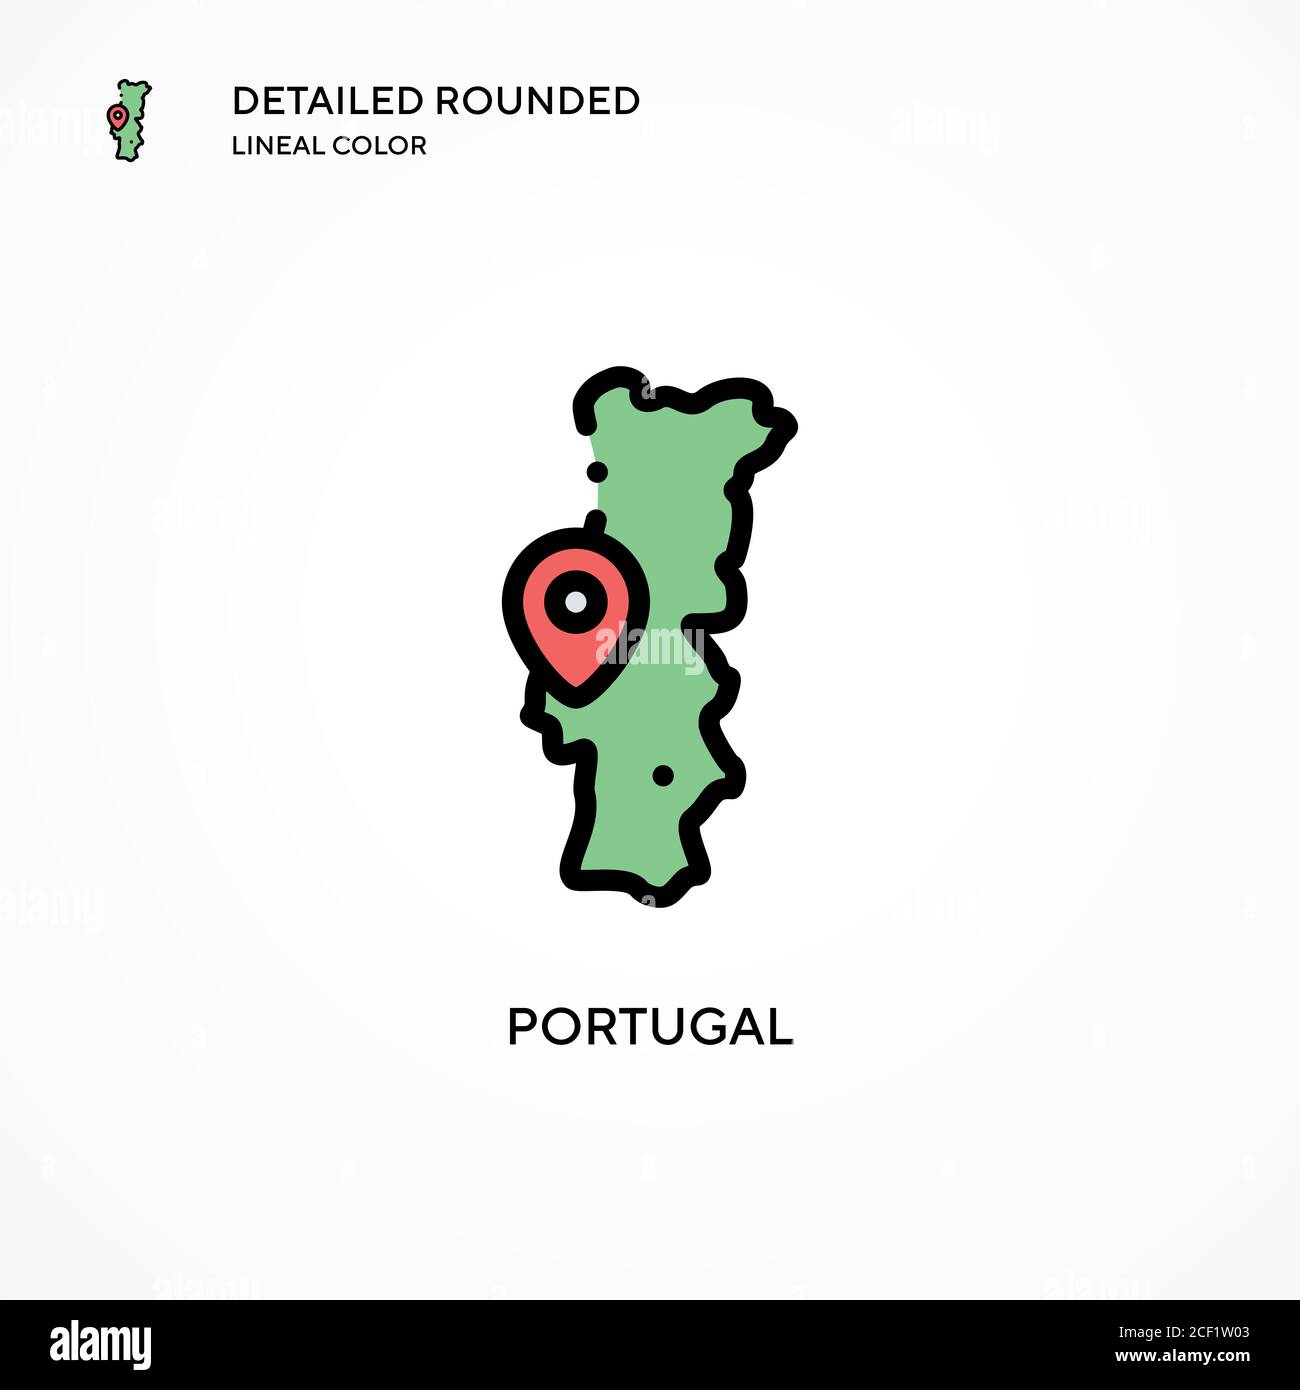 Vektorsymbol Portugal. Moderne Vektorgrafik Konzepte. Einfach zu bearbeiten und anzupassen. Stock Vektor